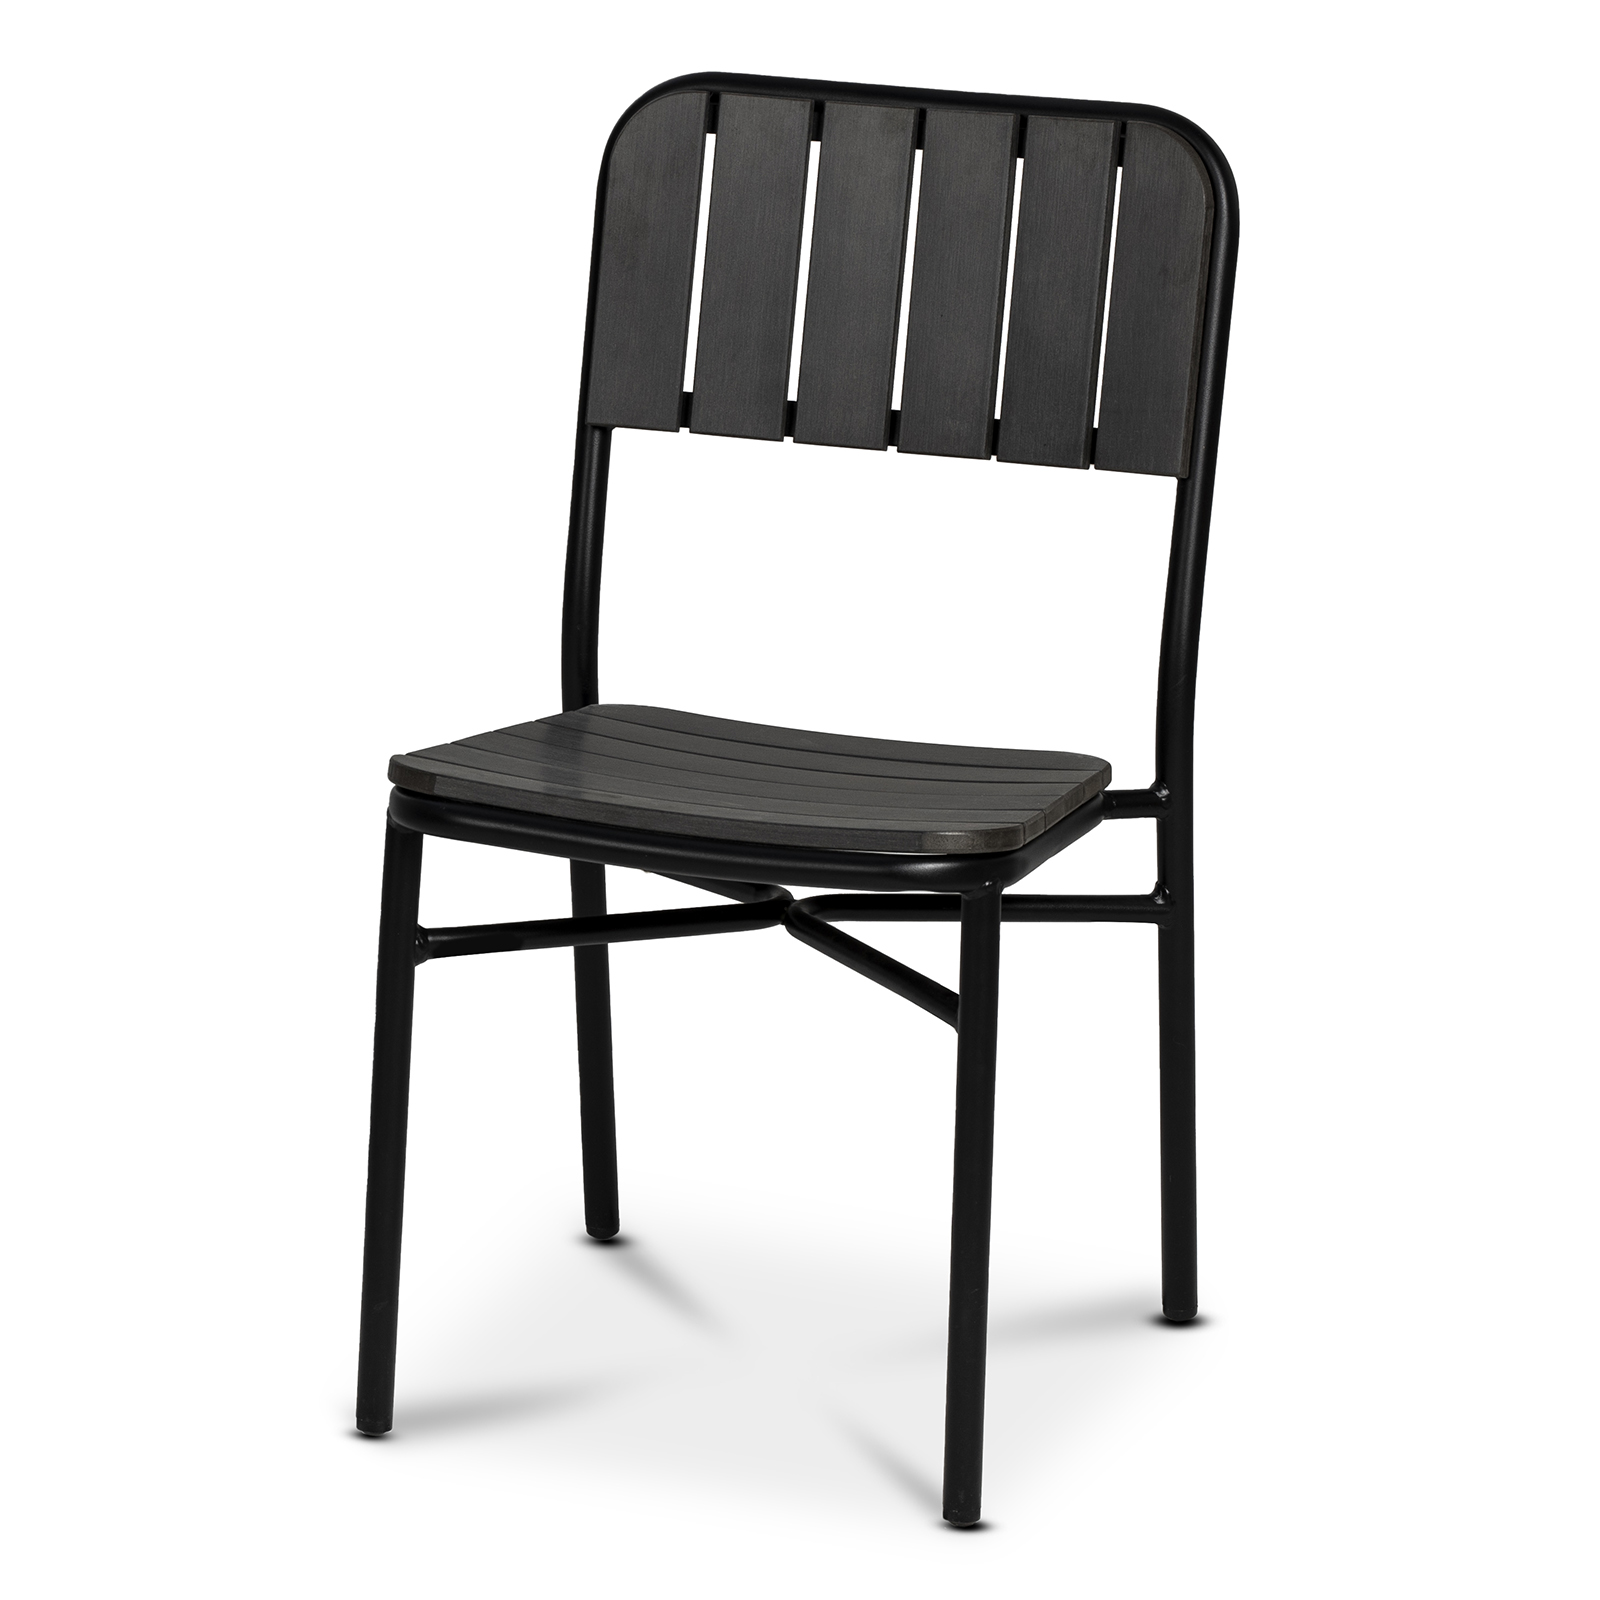 Laval musta alumiini / poly wood tuoli